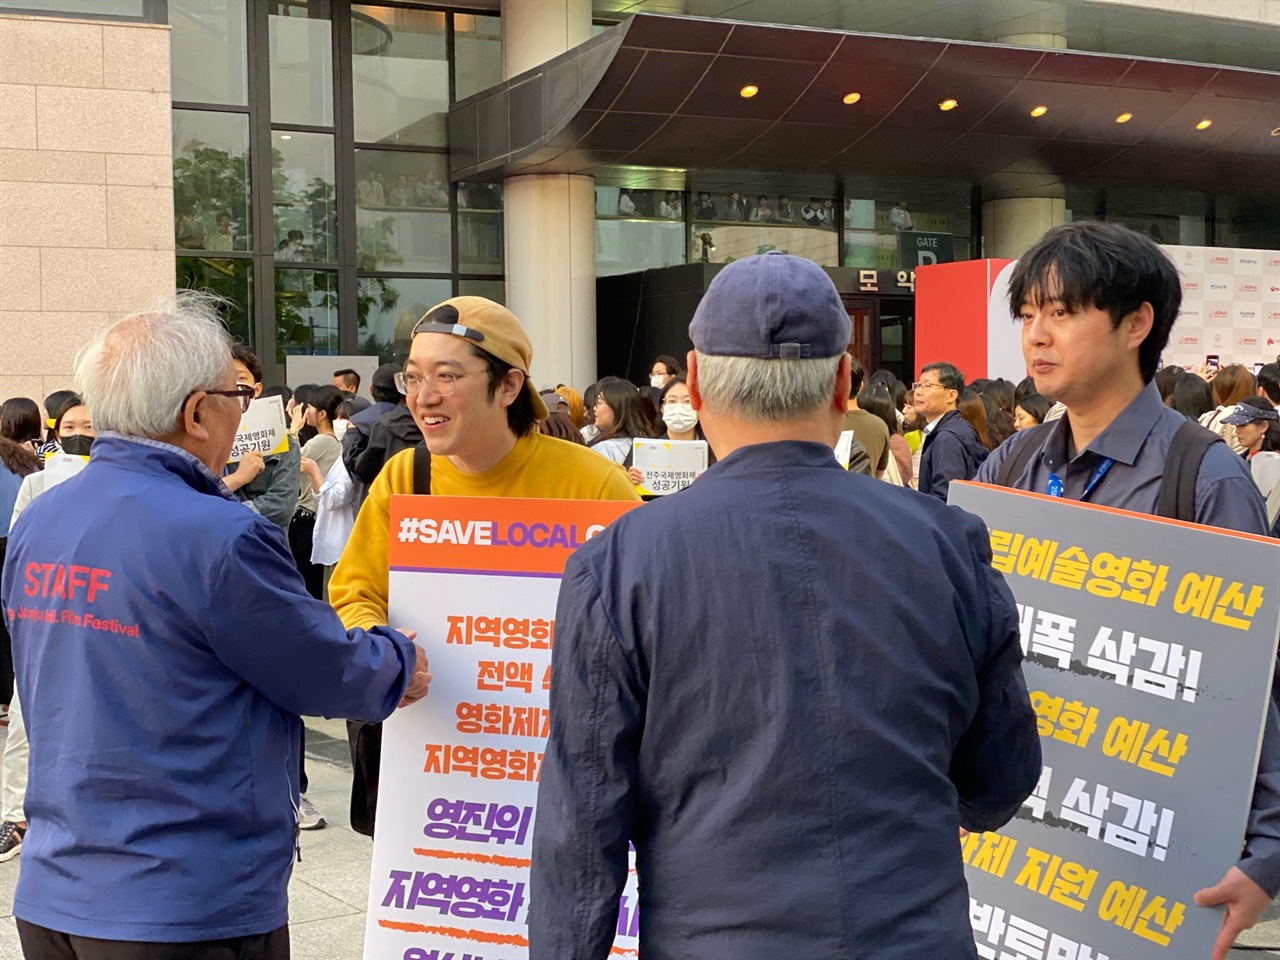  1일 오후 전주영화제 개막식장 앞에서 시위를 벌이는 독립영화인들을 전북지역 독립영화 원로들이 격려하고 있다. 